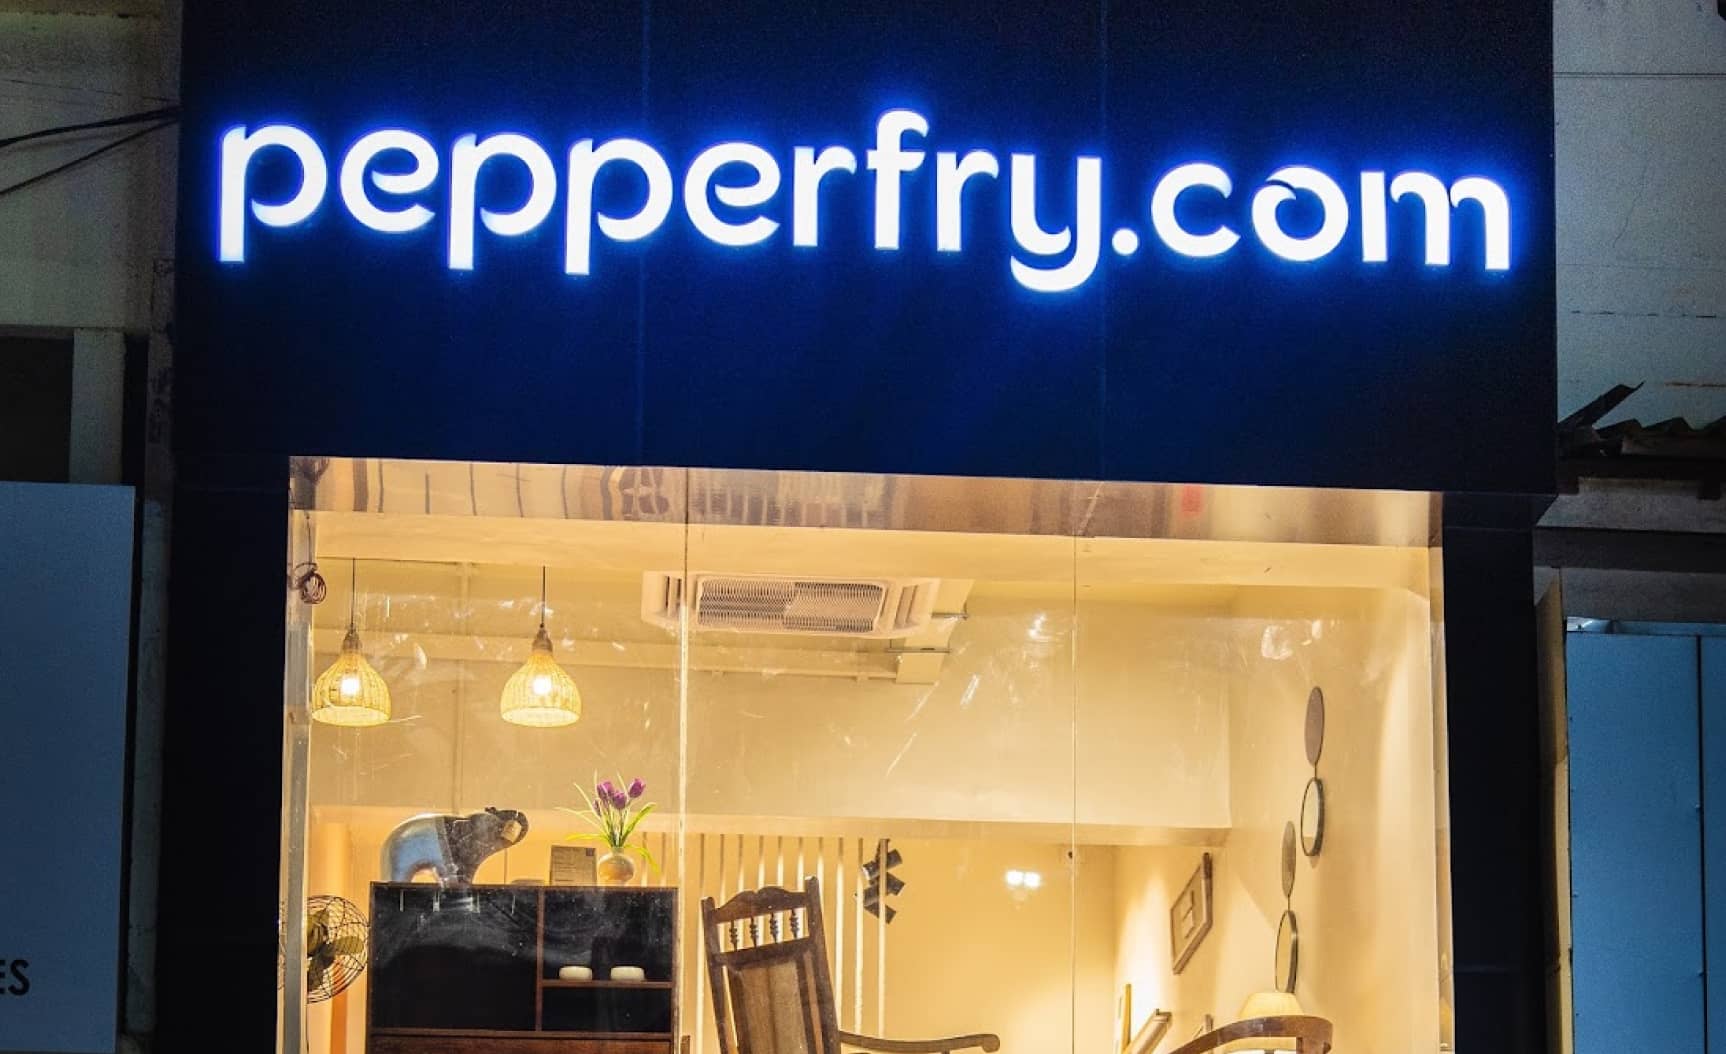 Studio Pepperfry - RS Puram, Coimbatore